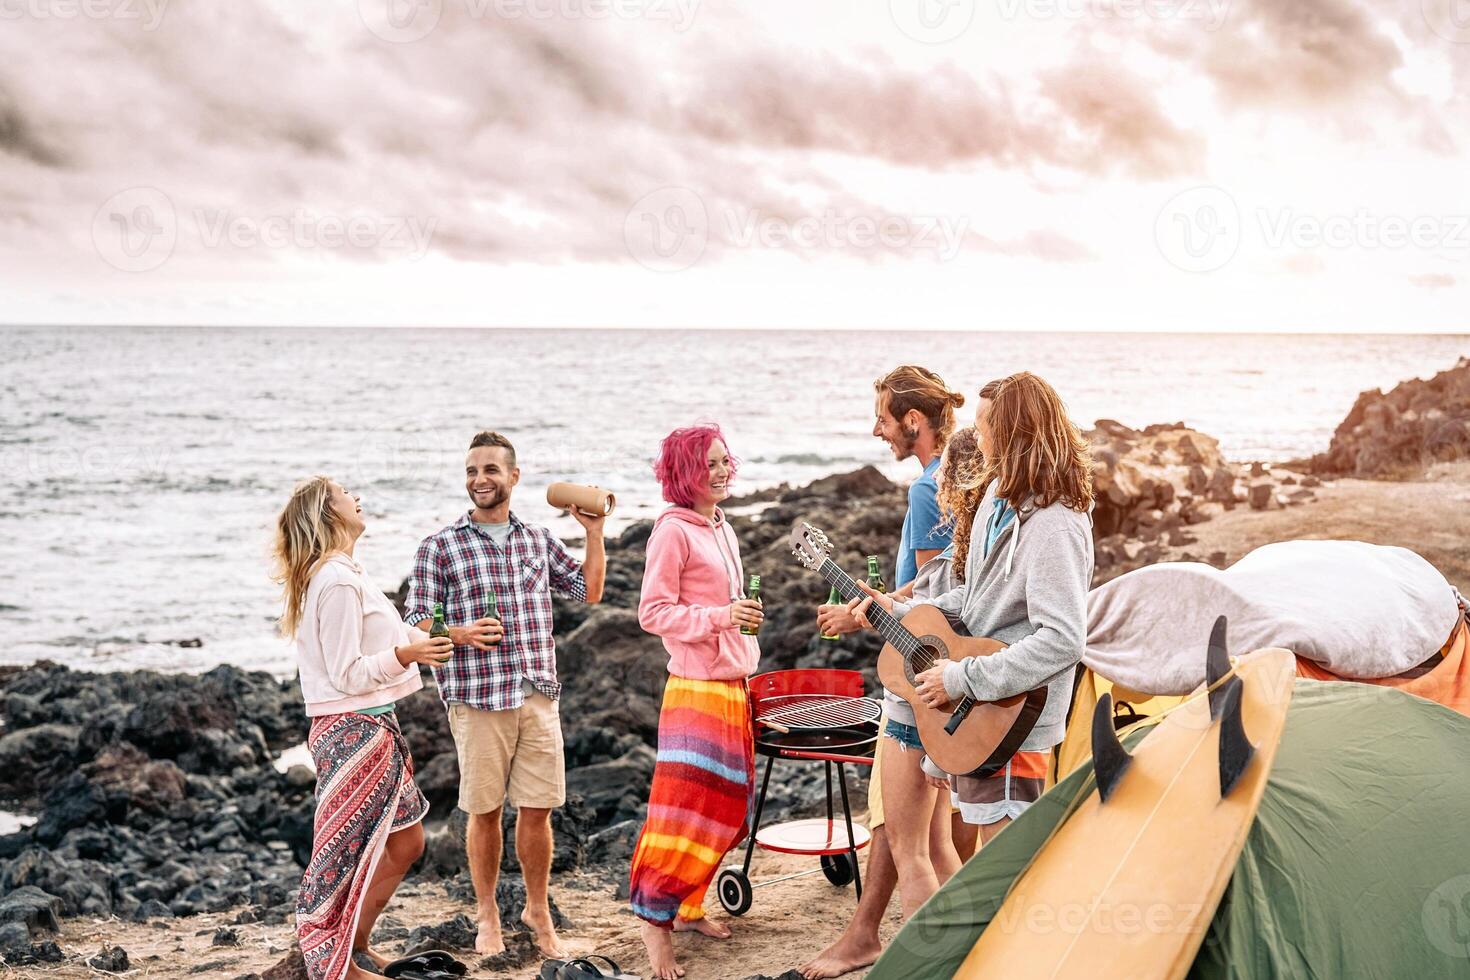 gelukkig surfer vrienden maken partij Bij zonsondergang terwijl camping De volgende de strand - jong mensen hebben pret en drinken bier buitenshuis - duizendjarig, zomer, vakantie en jeugd vakantie levensstijl concept foto